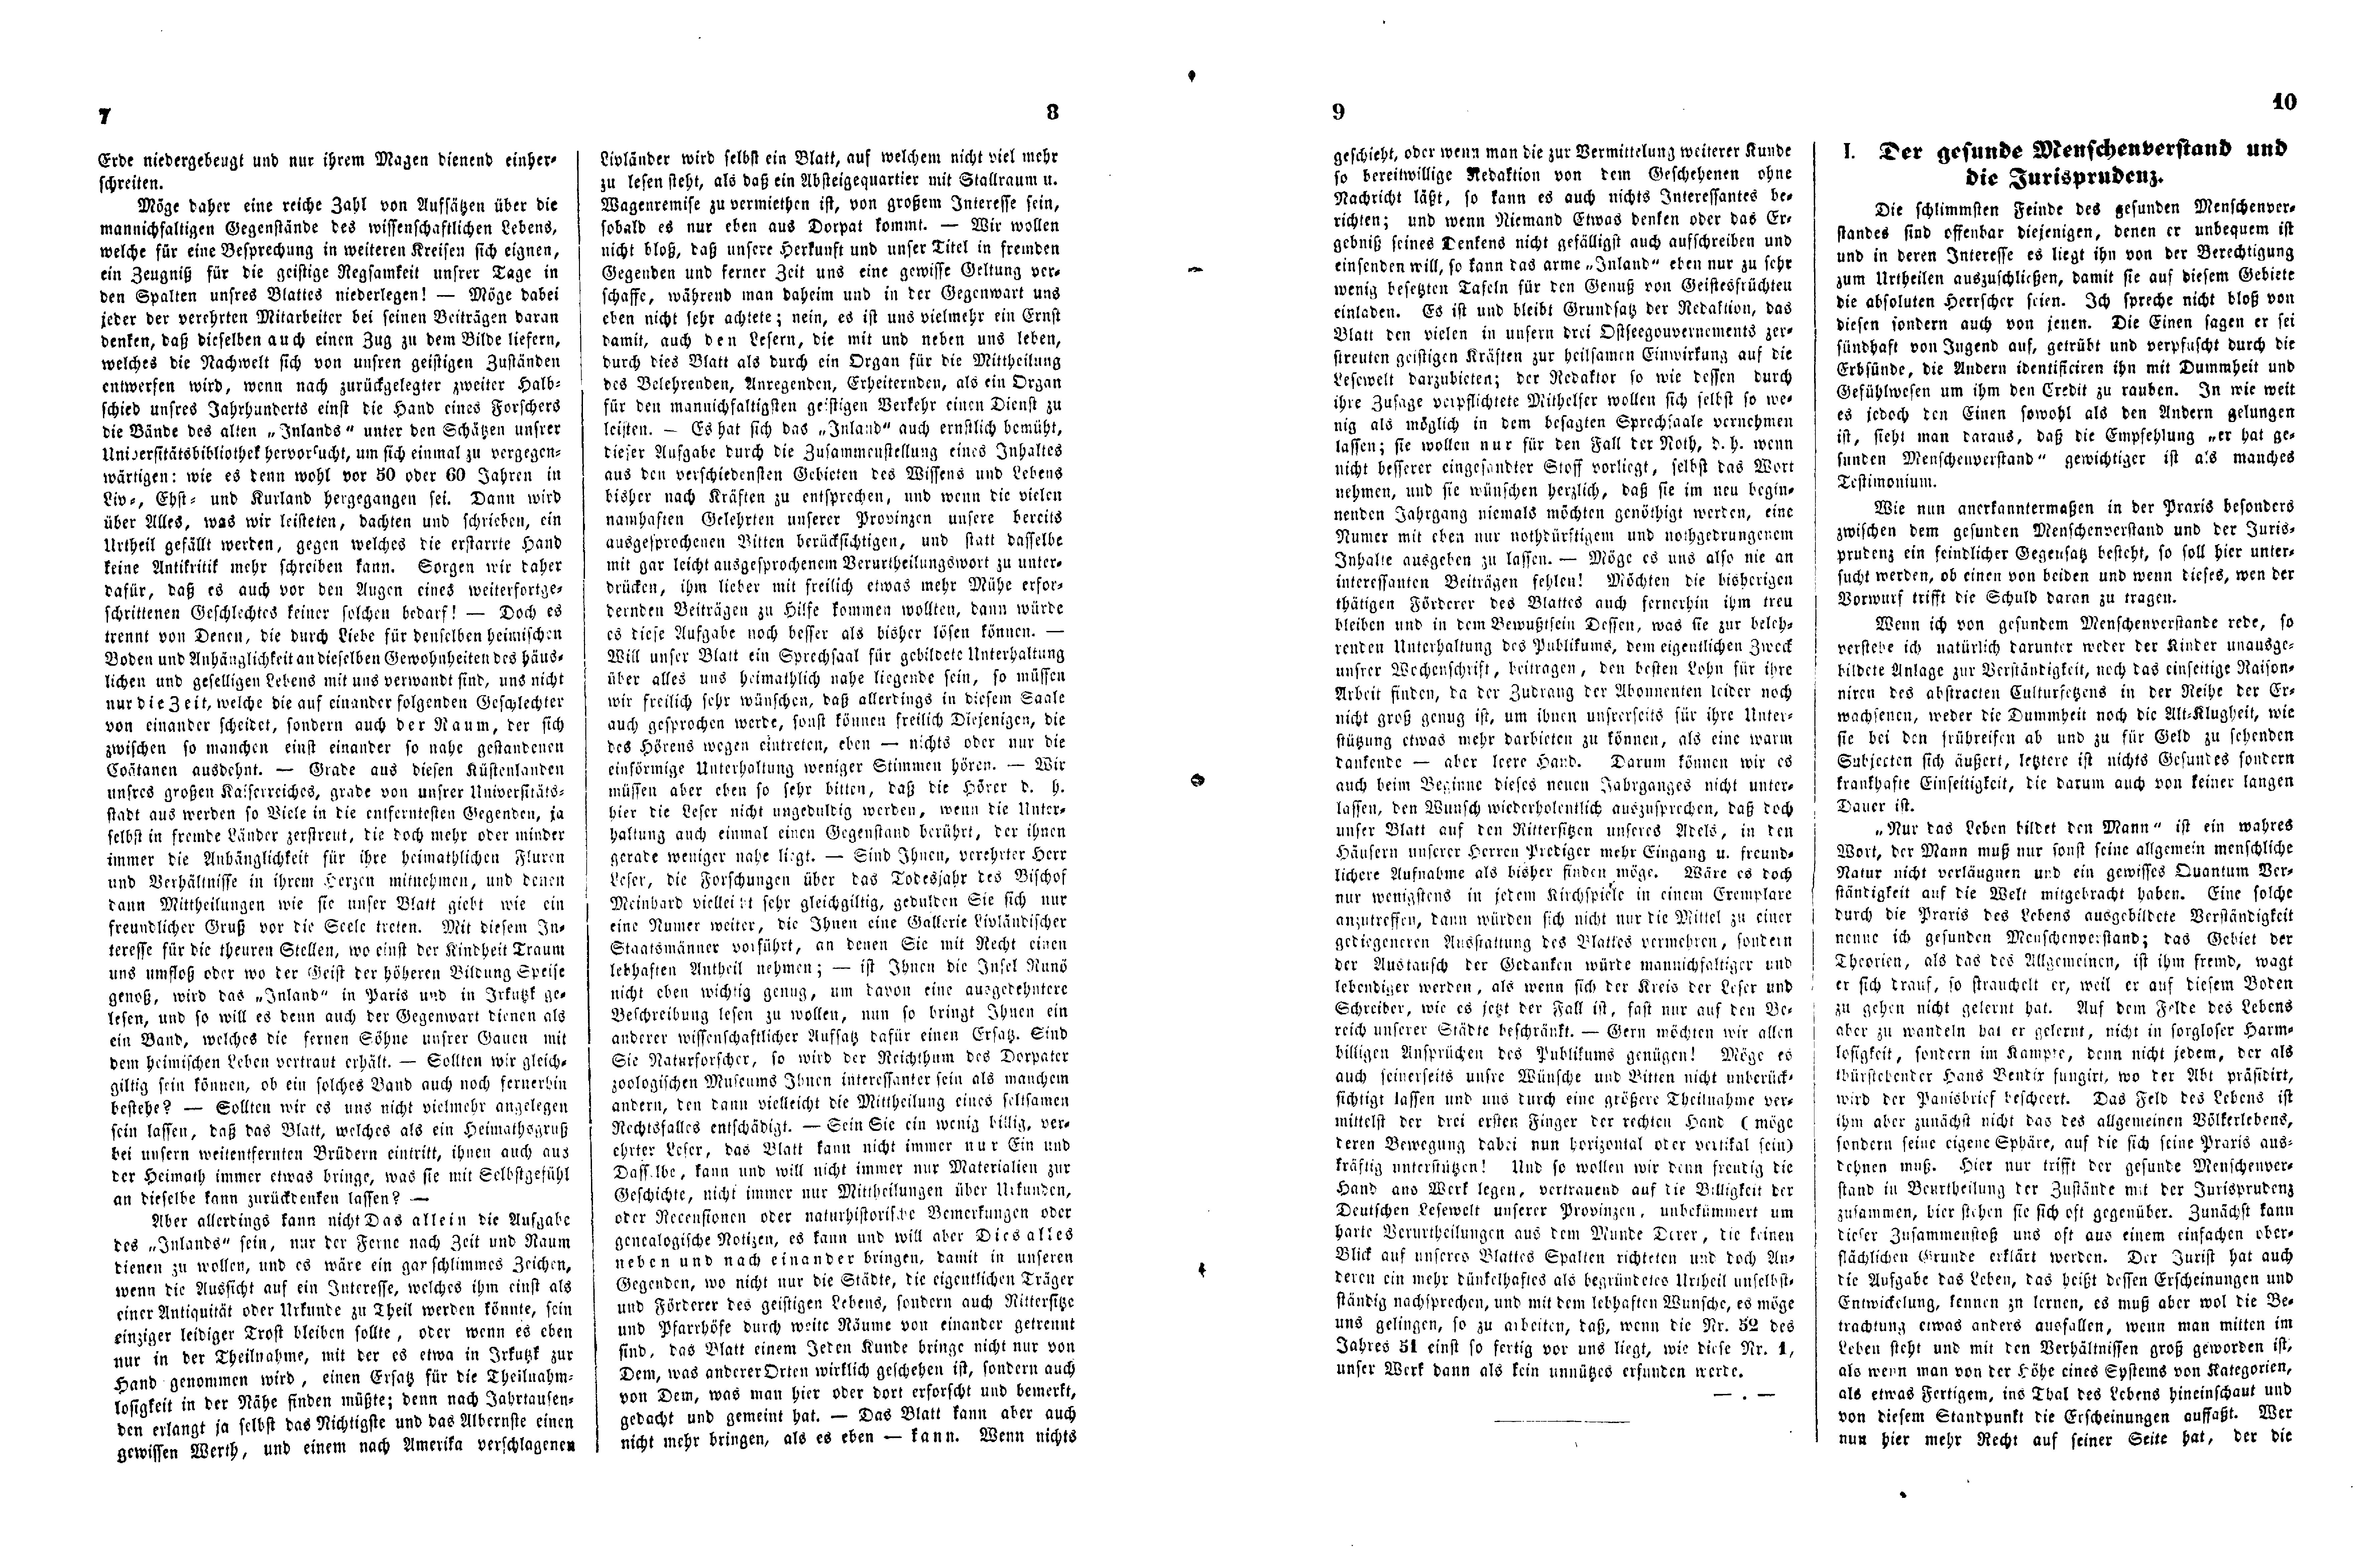 Das Inland [16] (1851) | 6. (7-10) Haupttext